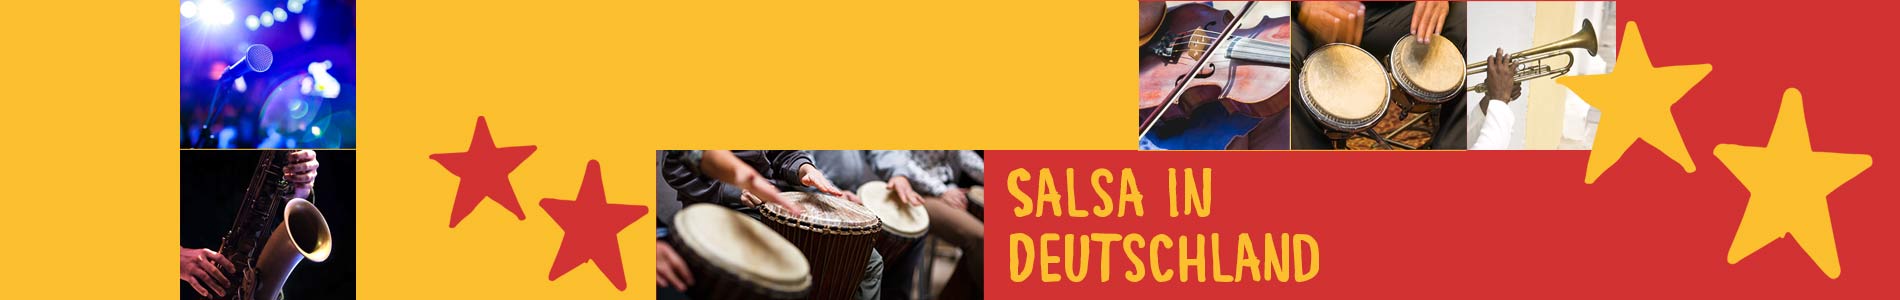 Salsa in Detmerode – Salsa lernen und tanzen, Tanzkurse, Partys, Veranstaltungen